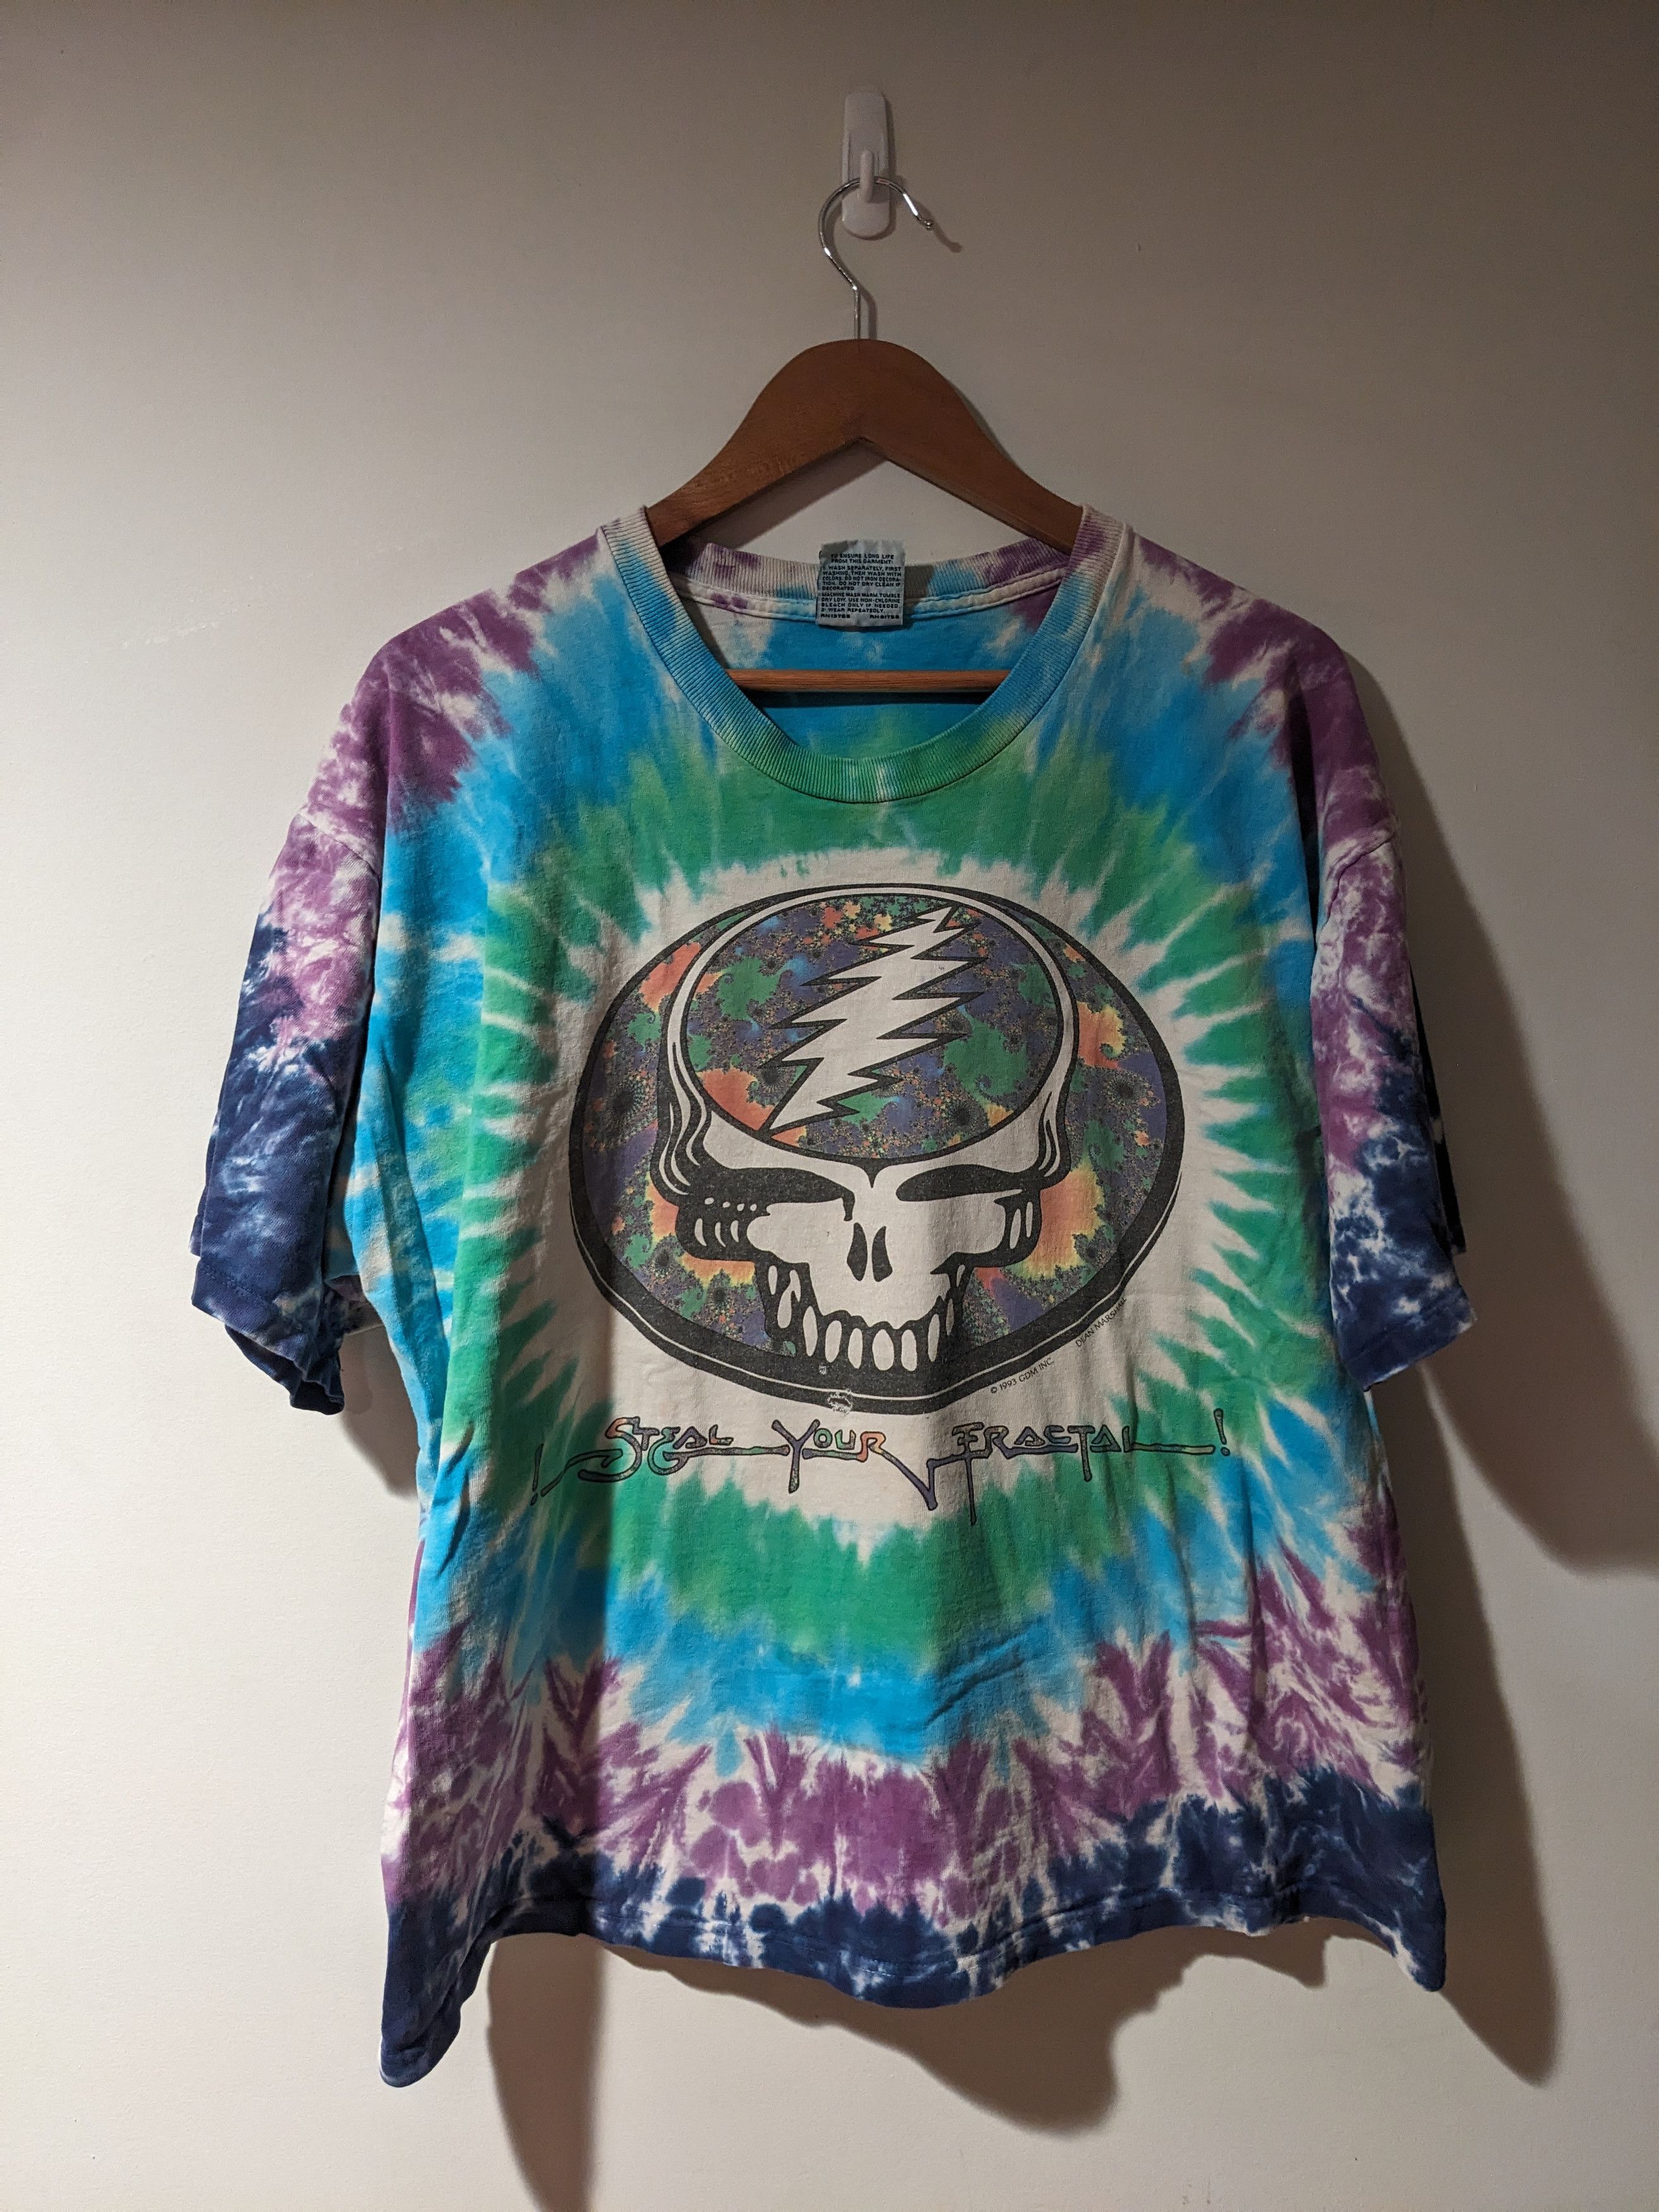 Vintage Vintage 1993 Grateful Dead Steal Your Fractal XL T-Shirt Size US XL / EU 56 / 4 - 1 Preview